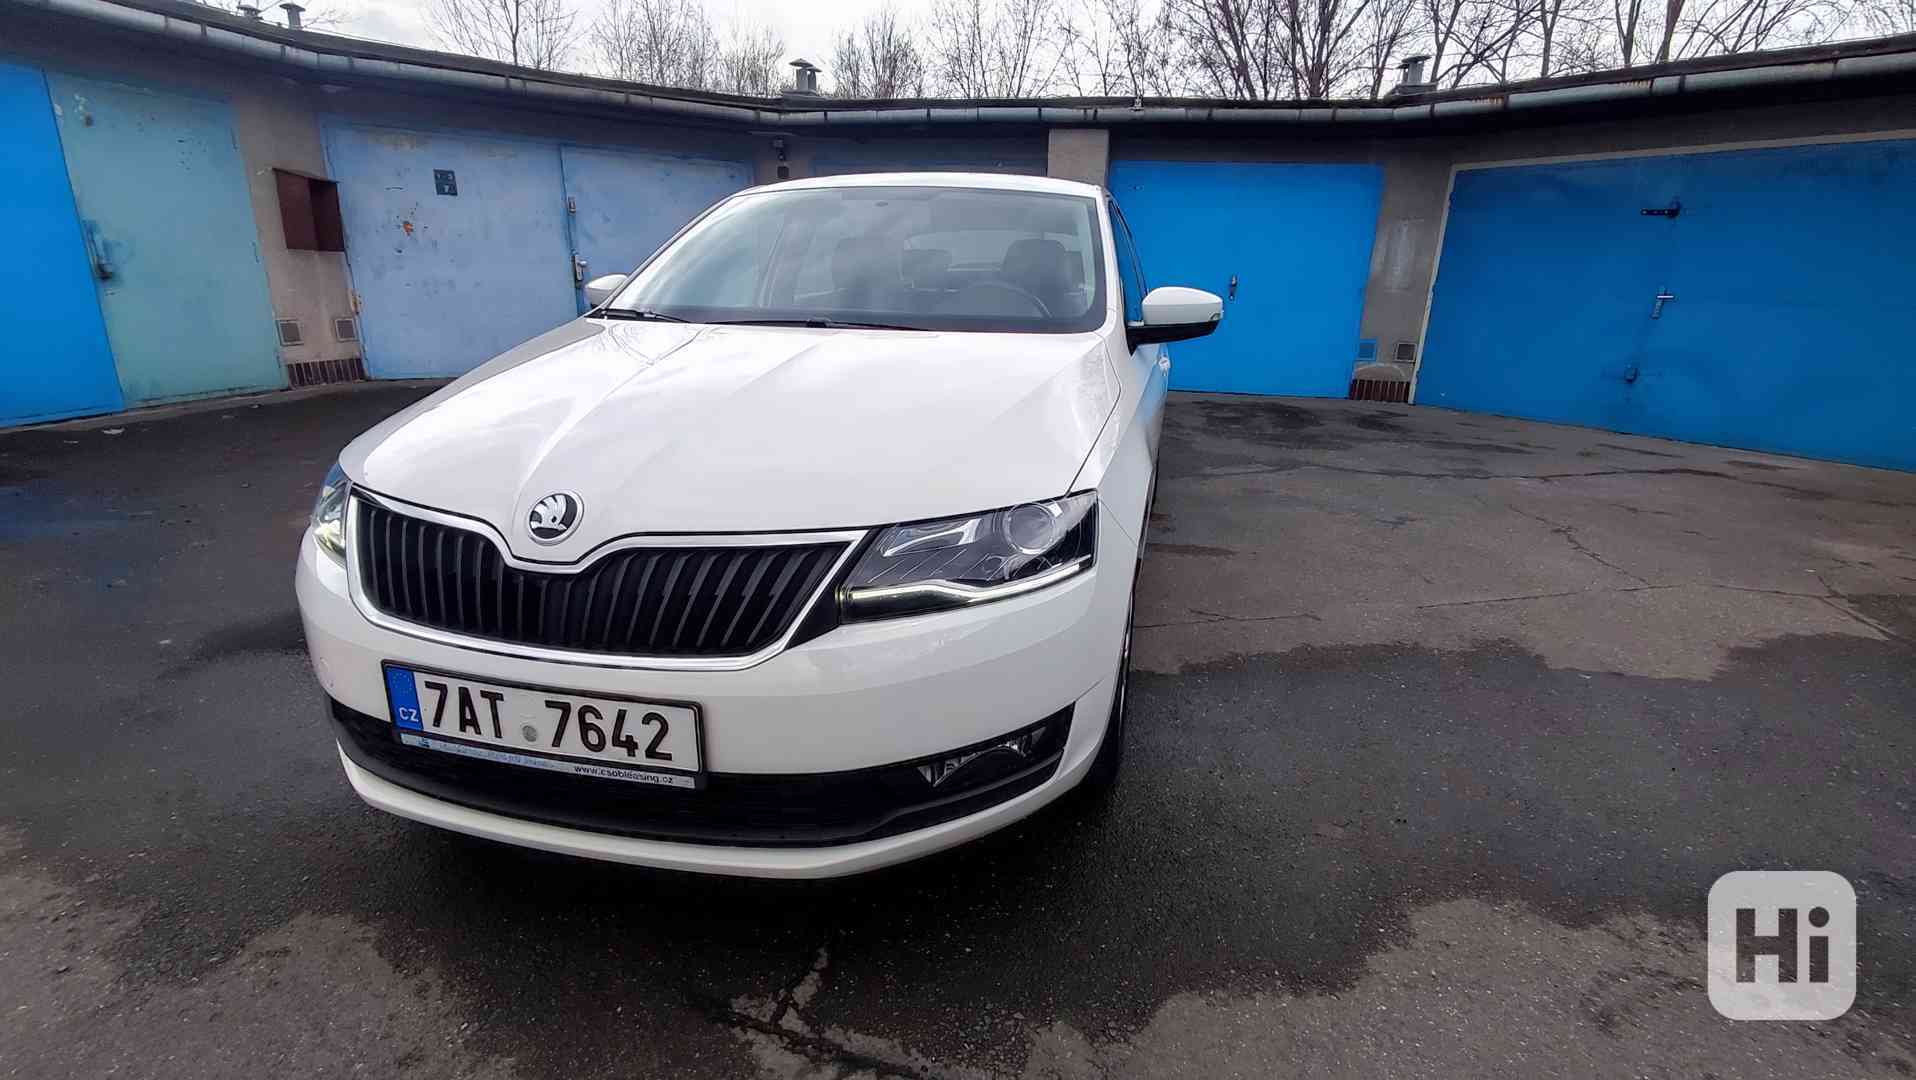 Škoda Rapid 1.0 TSi,70kW,ČR,2019,garážováno - foto 1